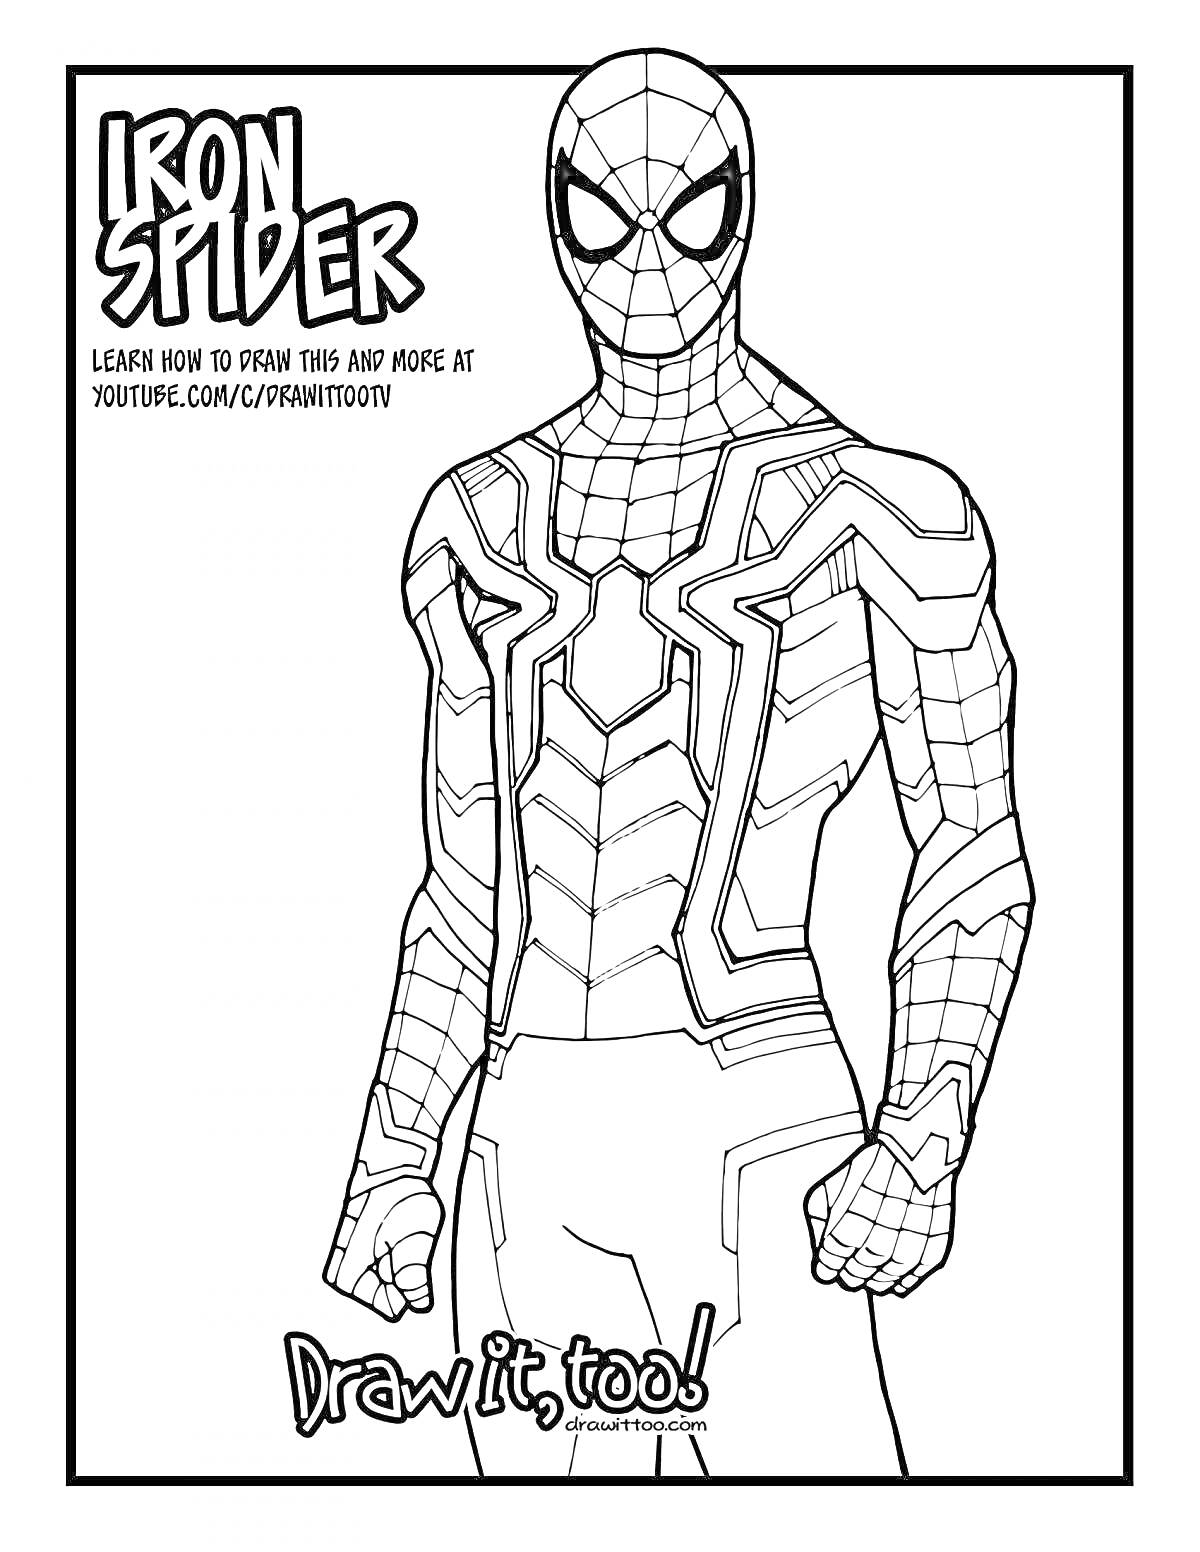 РаскраскаЧеловек-паук в костюме Железного Человека, надписи 